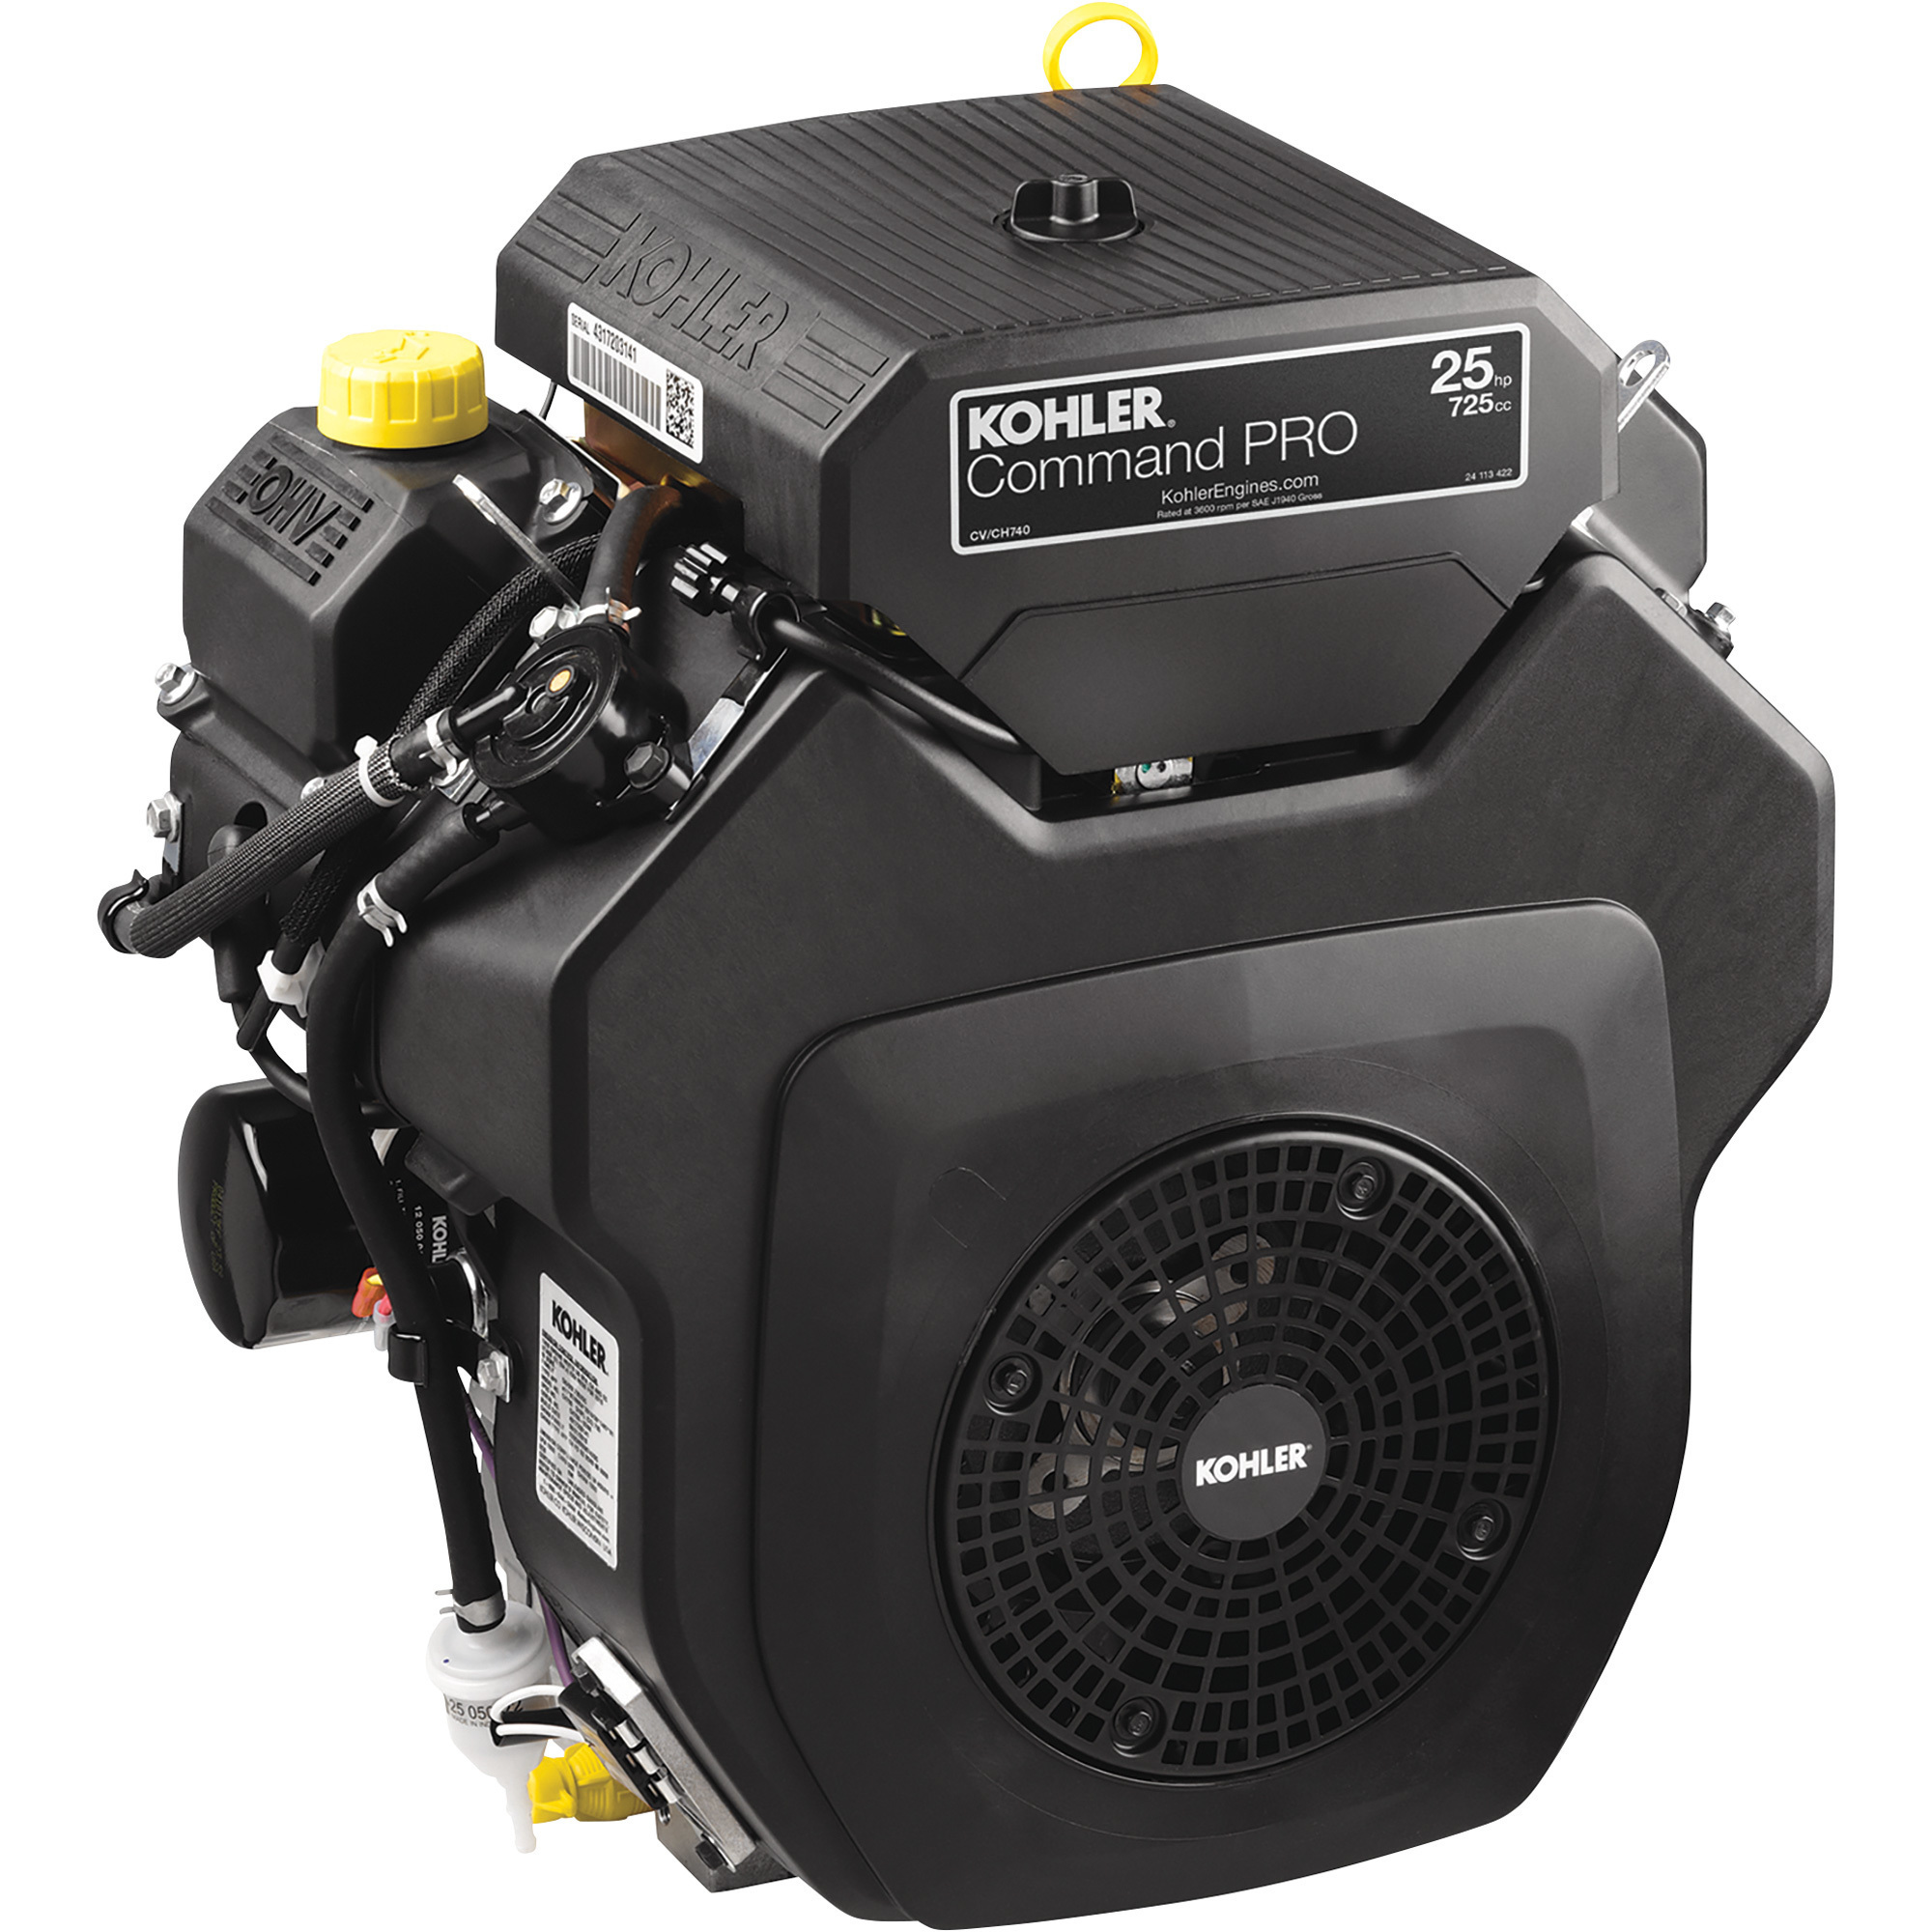 Kohler Command Pro OHV Horizontal Engine â 725CC, 25 HP, Model PA-CH740-3364